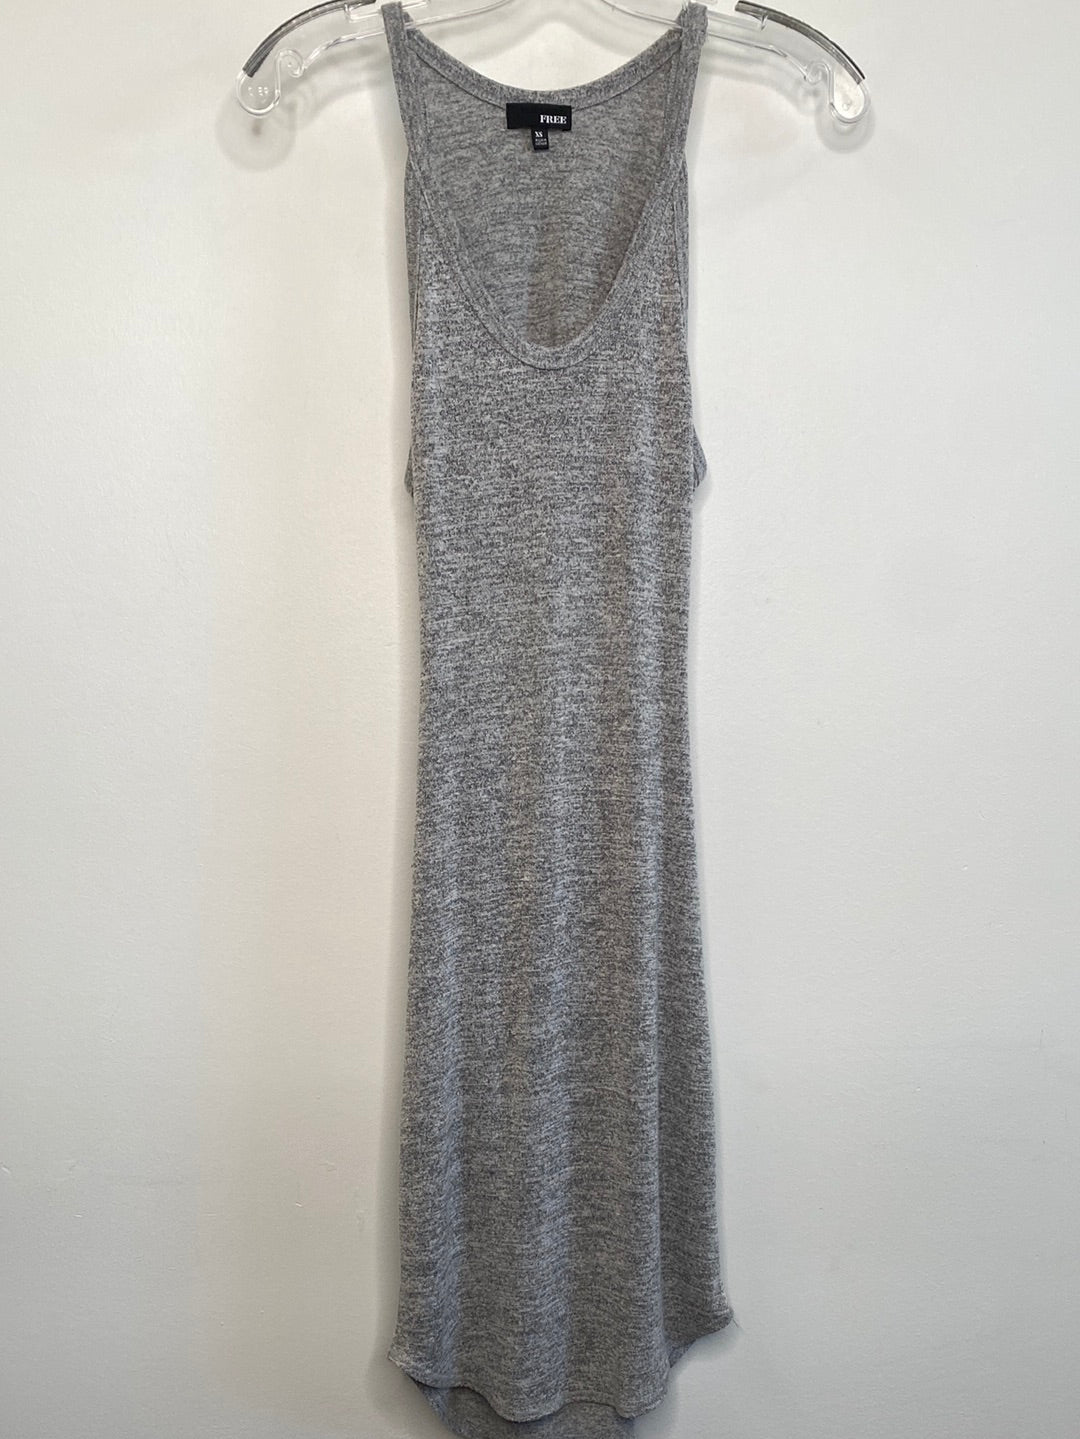 Wilfred Free Sleeveless Midi Backless Dress (XS)